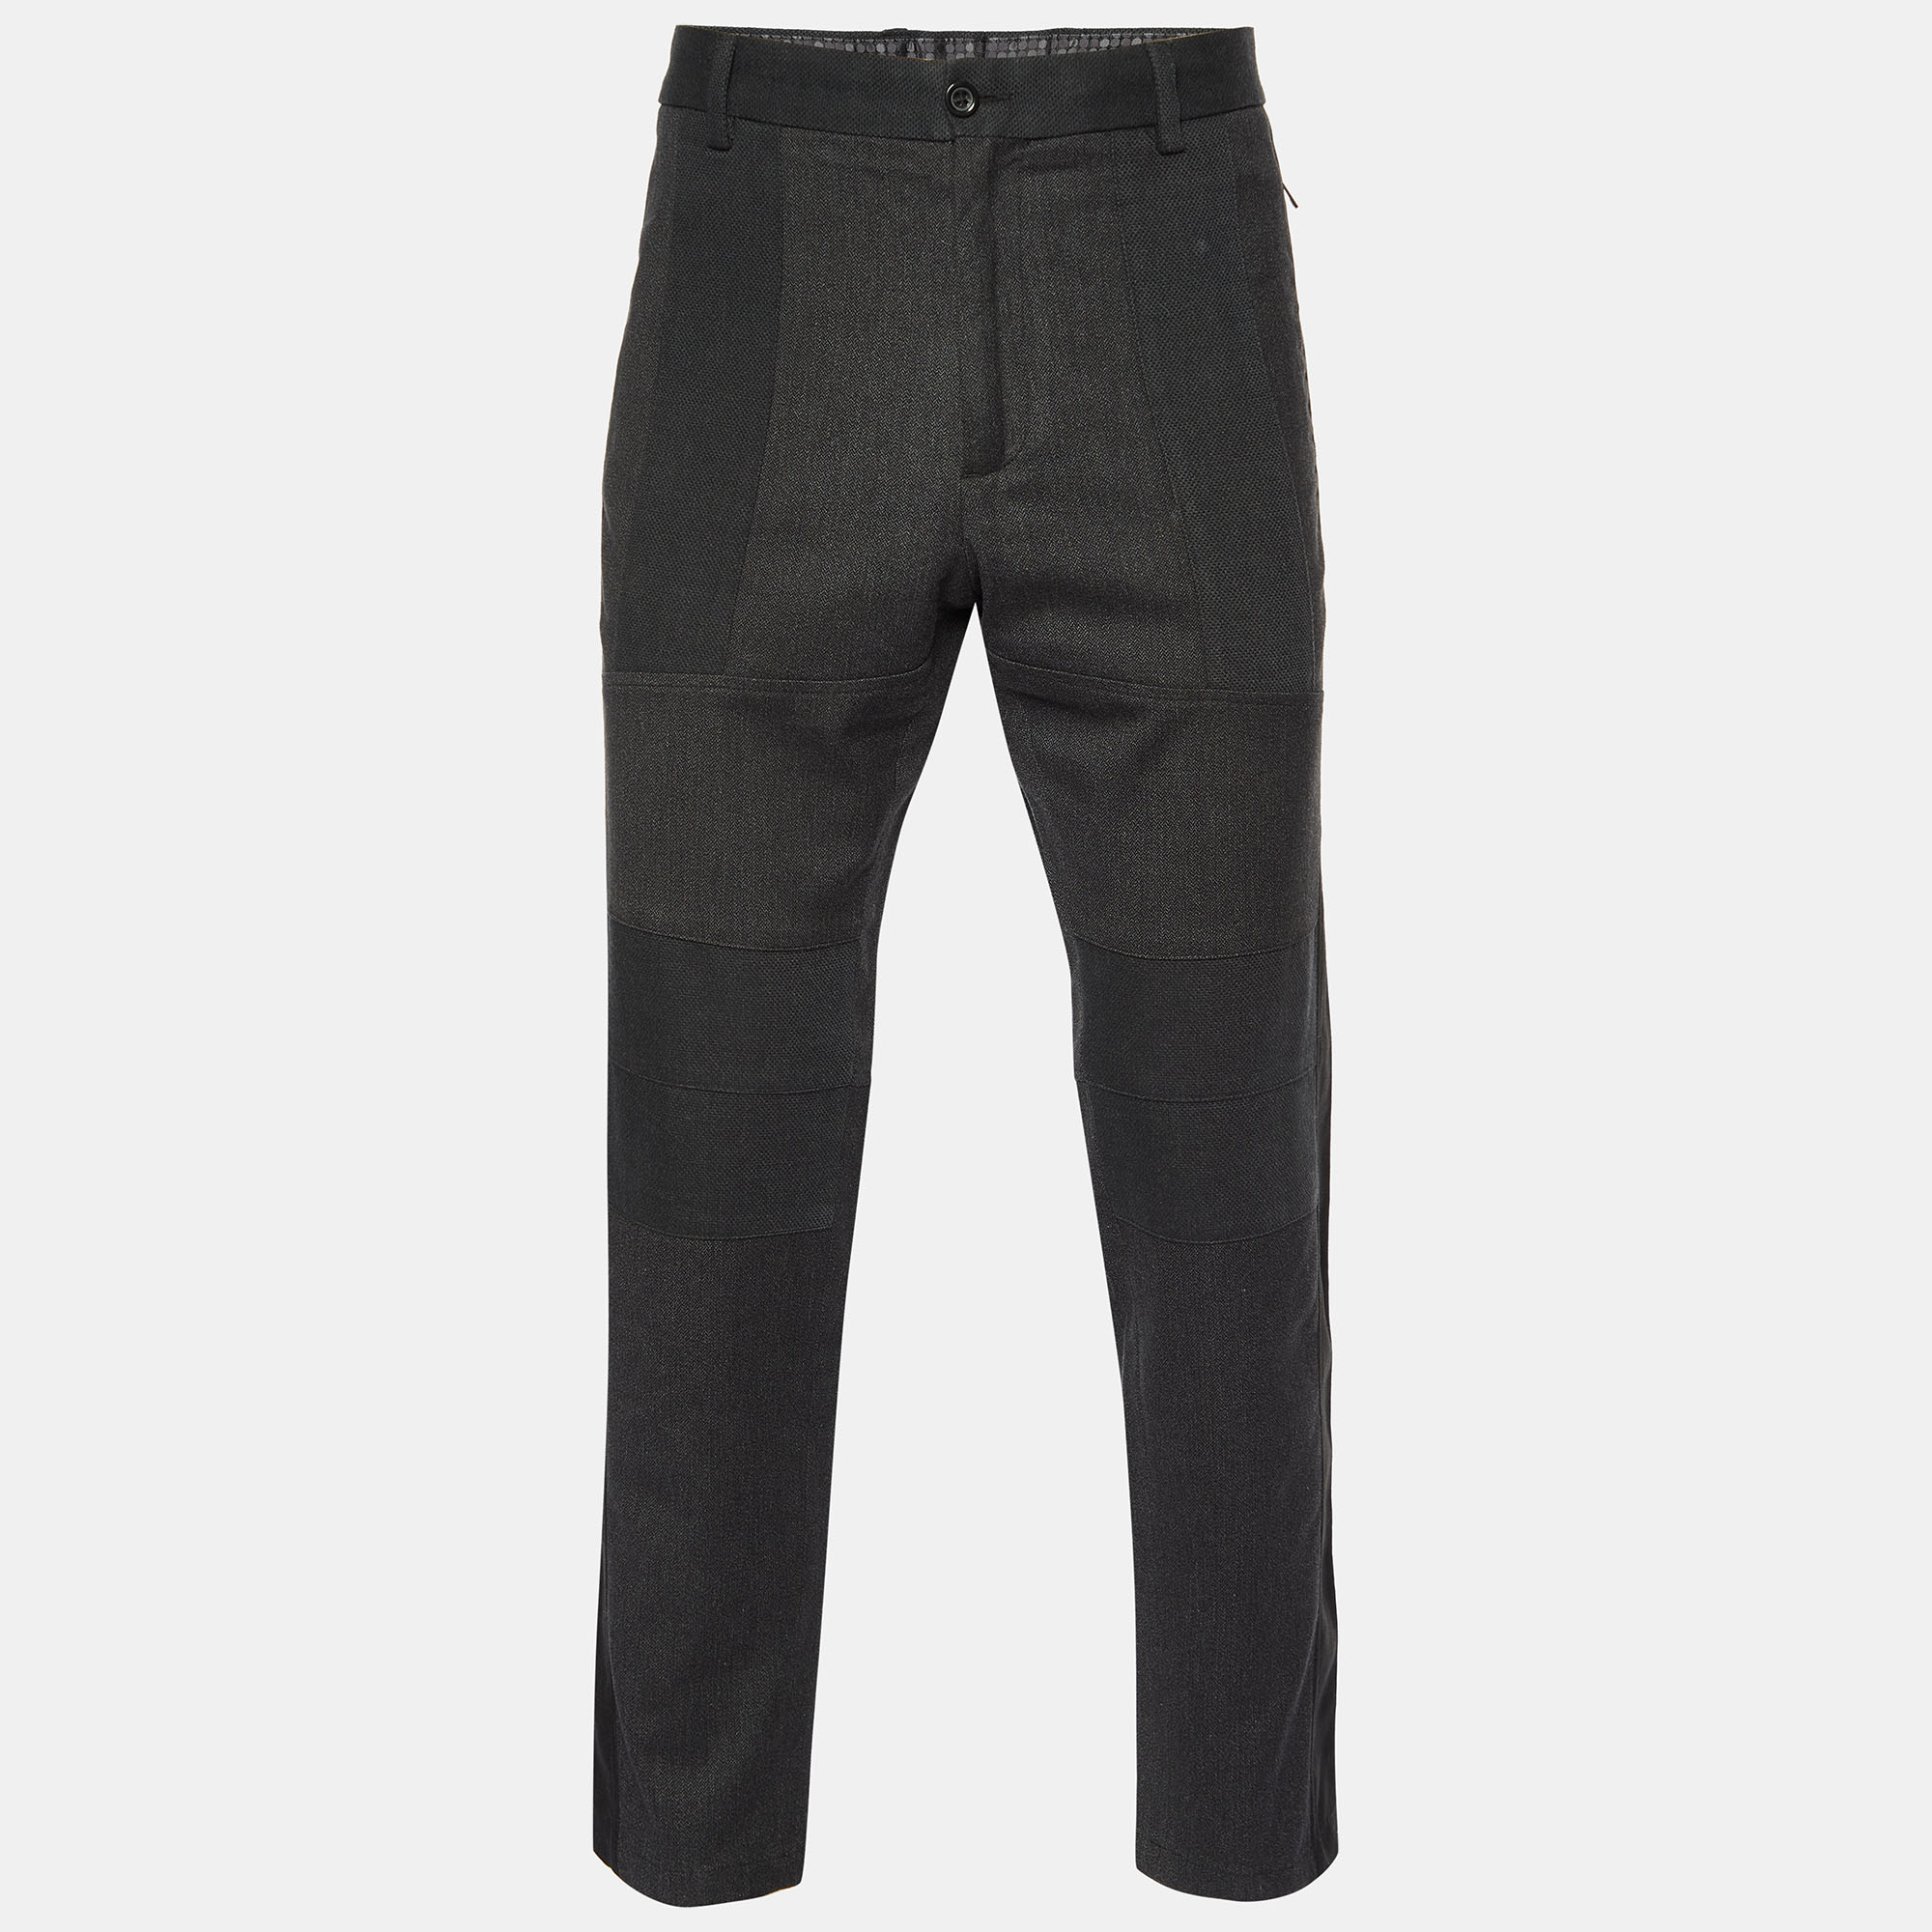 Dolce & Gabbana Black Cotton Blend Pants XL